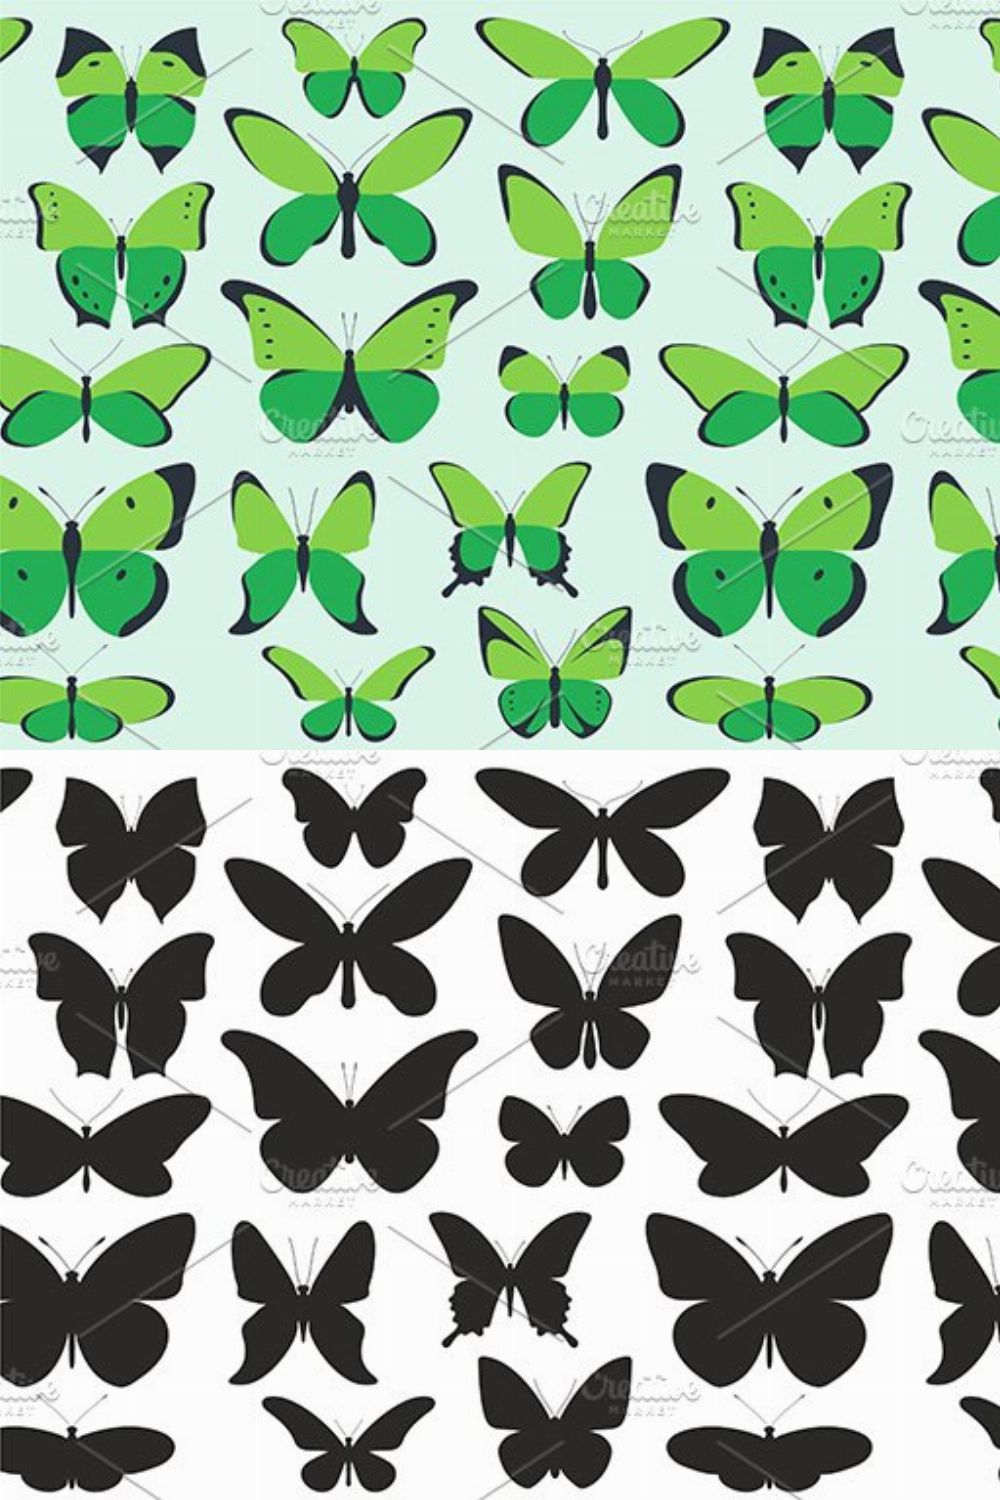 Butterflies set pinterest preview image.